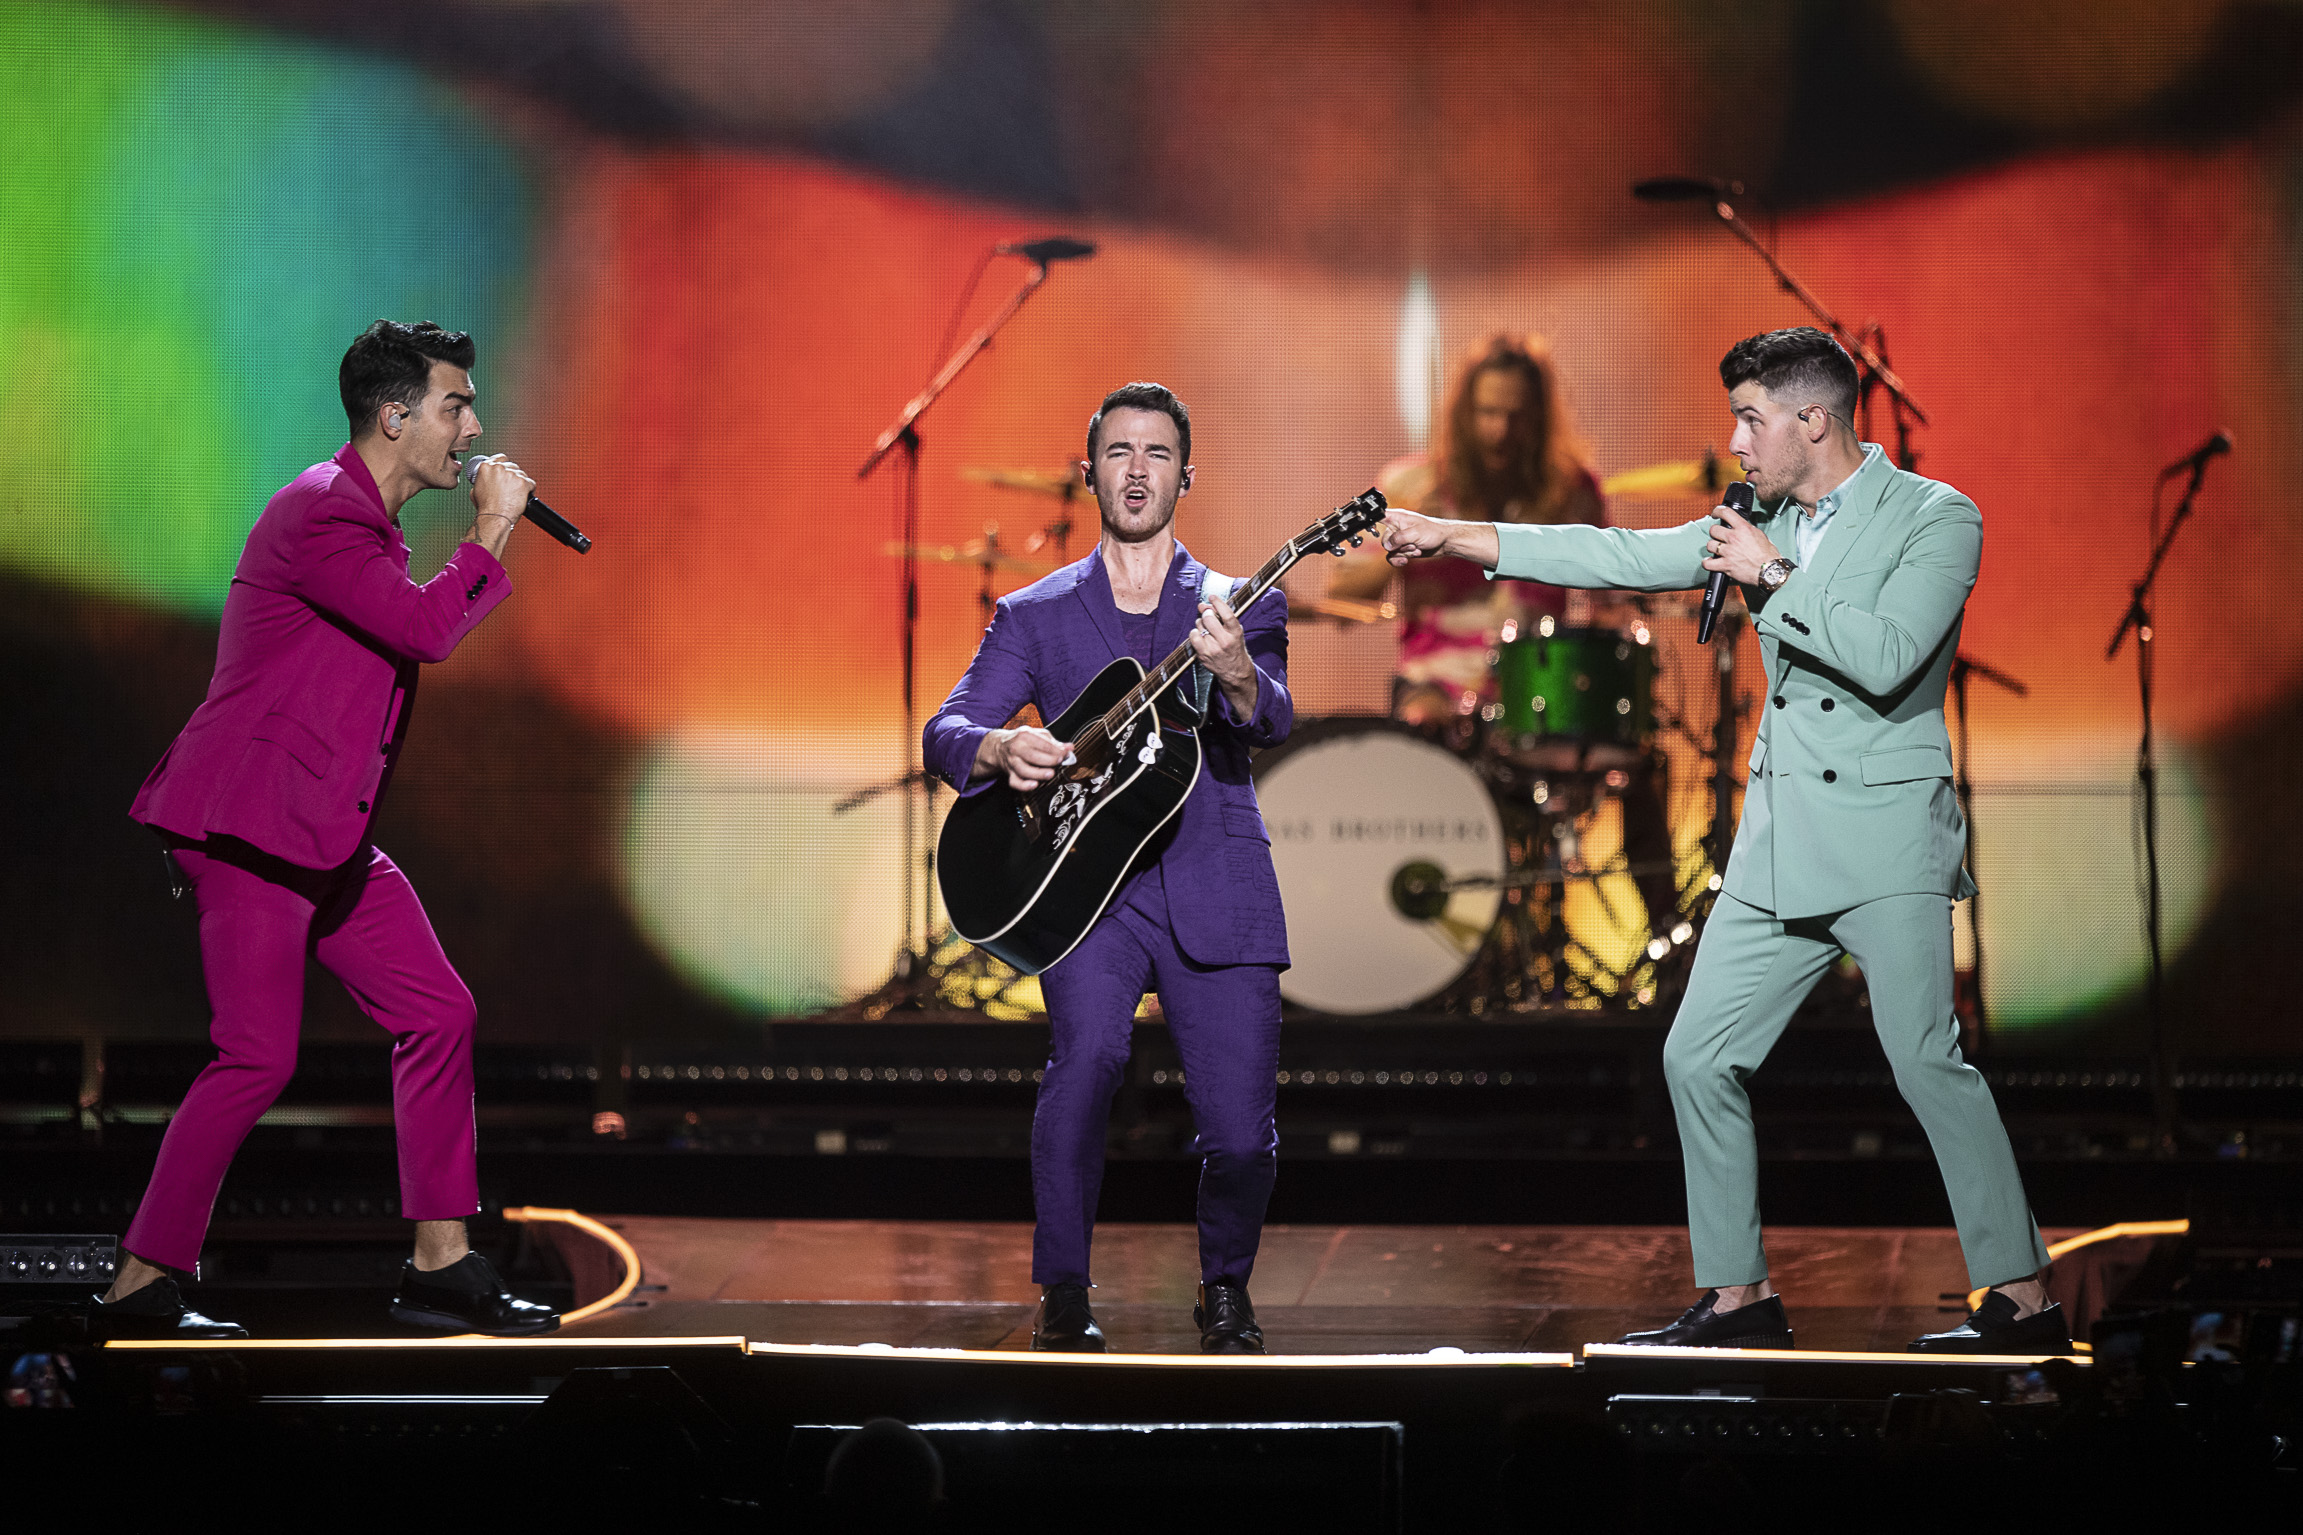 Jonas Brothers en México: El día en el que comenzó, otra vez, lo que no terminó hace seis años